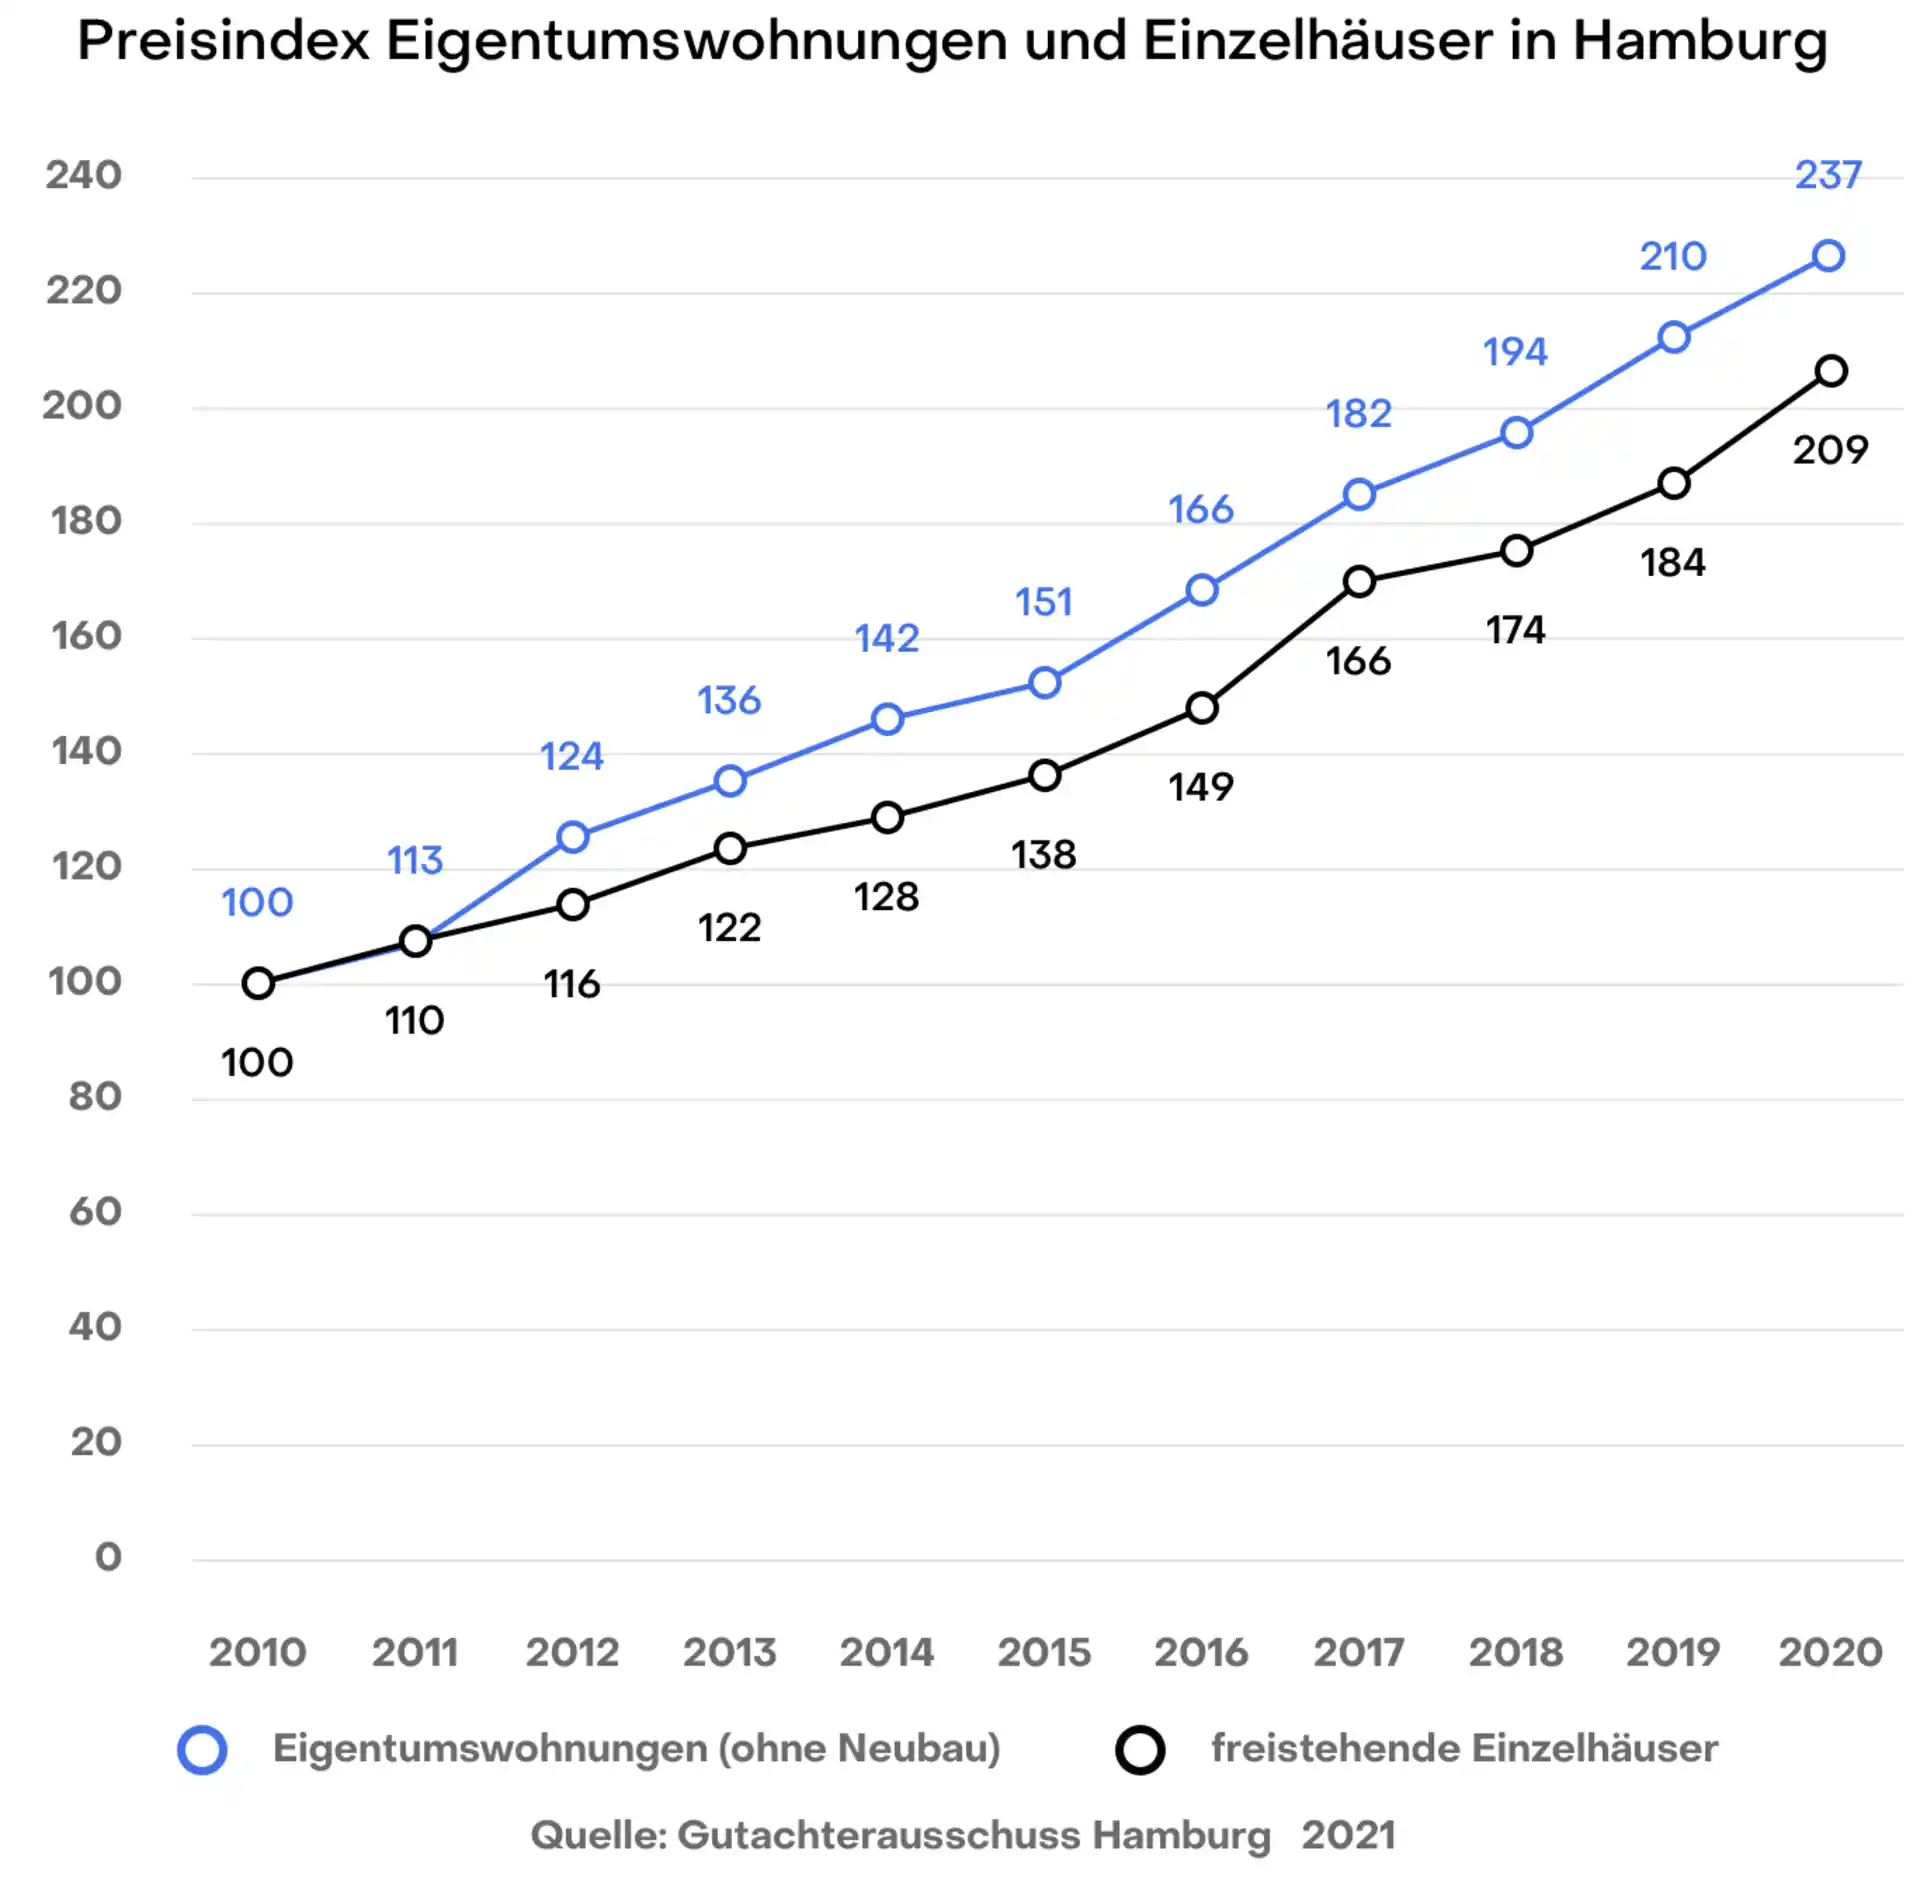 Hamburg Preisindex Wohnungen und Einfamilienhäuser Gutachterausschuss 2020